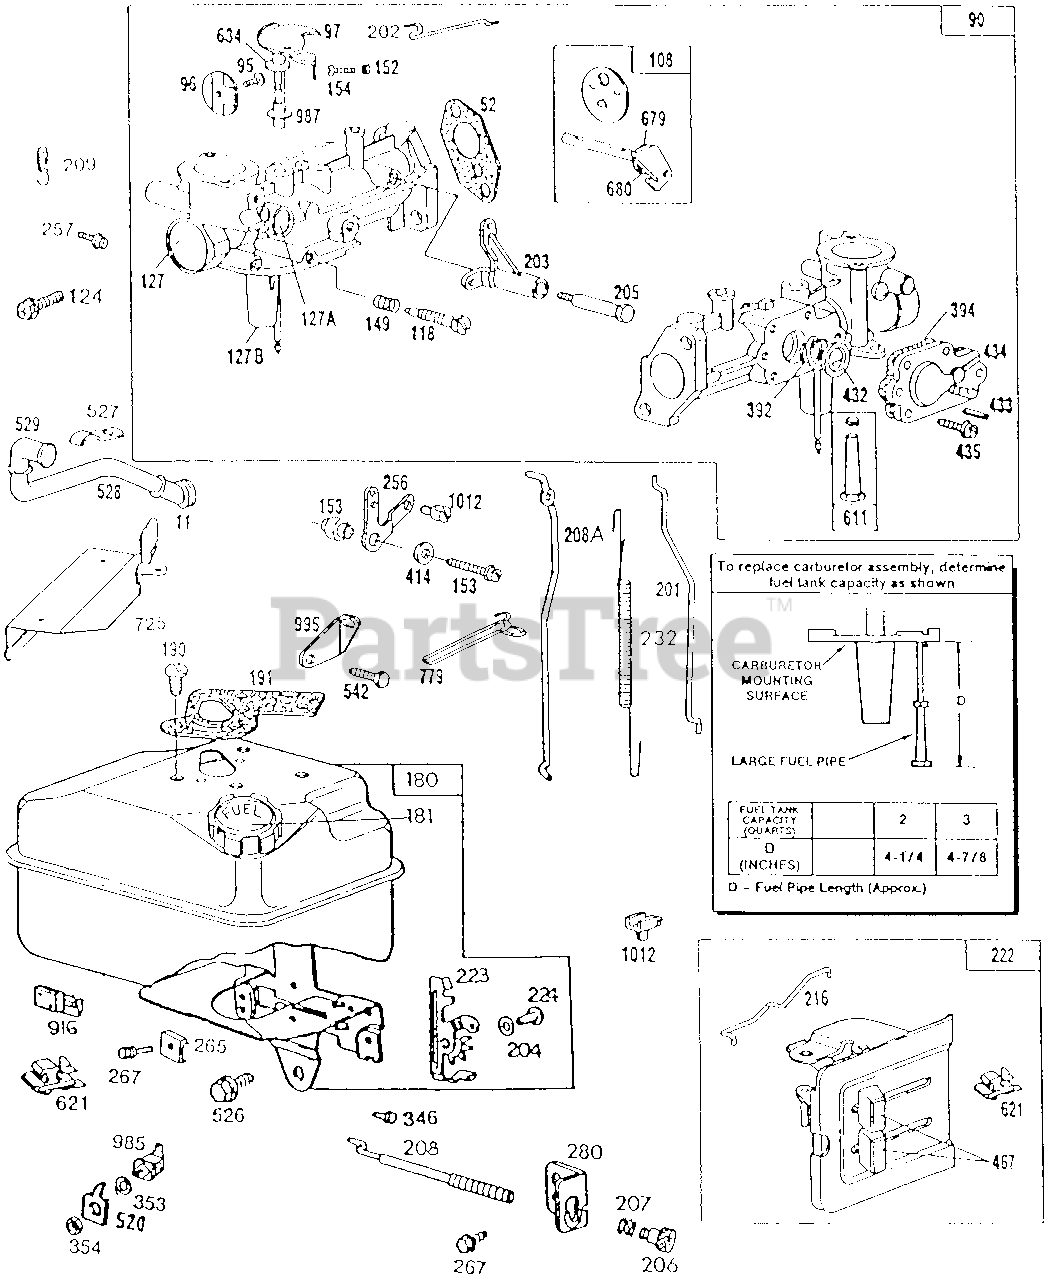 Briggs & Stratton 112212-0837-01 - Briggs & Stratton Horizontal Engine  Carburetor & Fuel Tank Assy Parts Lookup with Diagrams